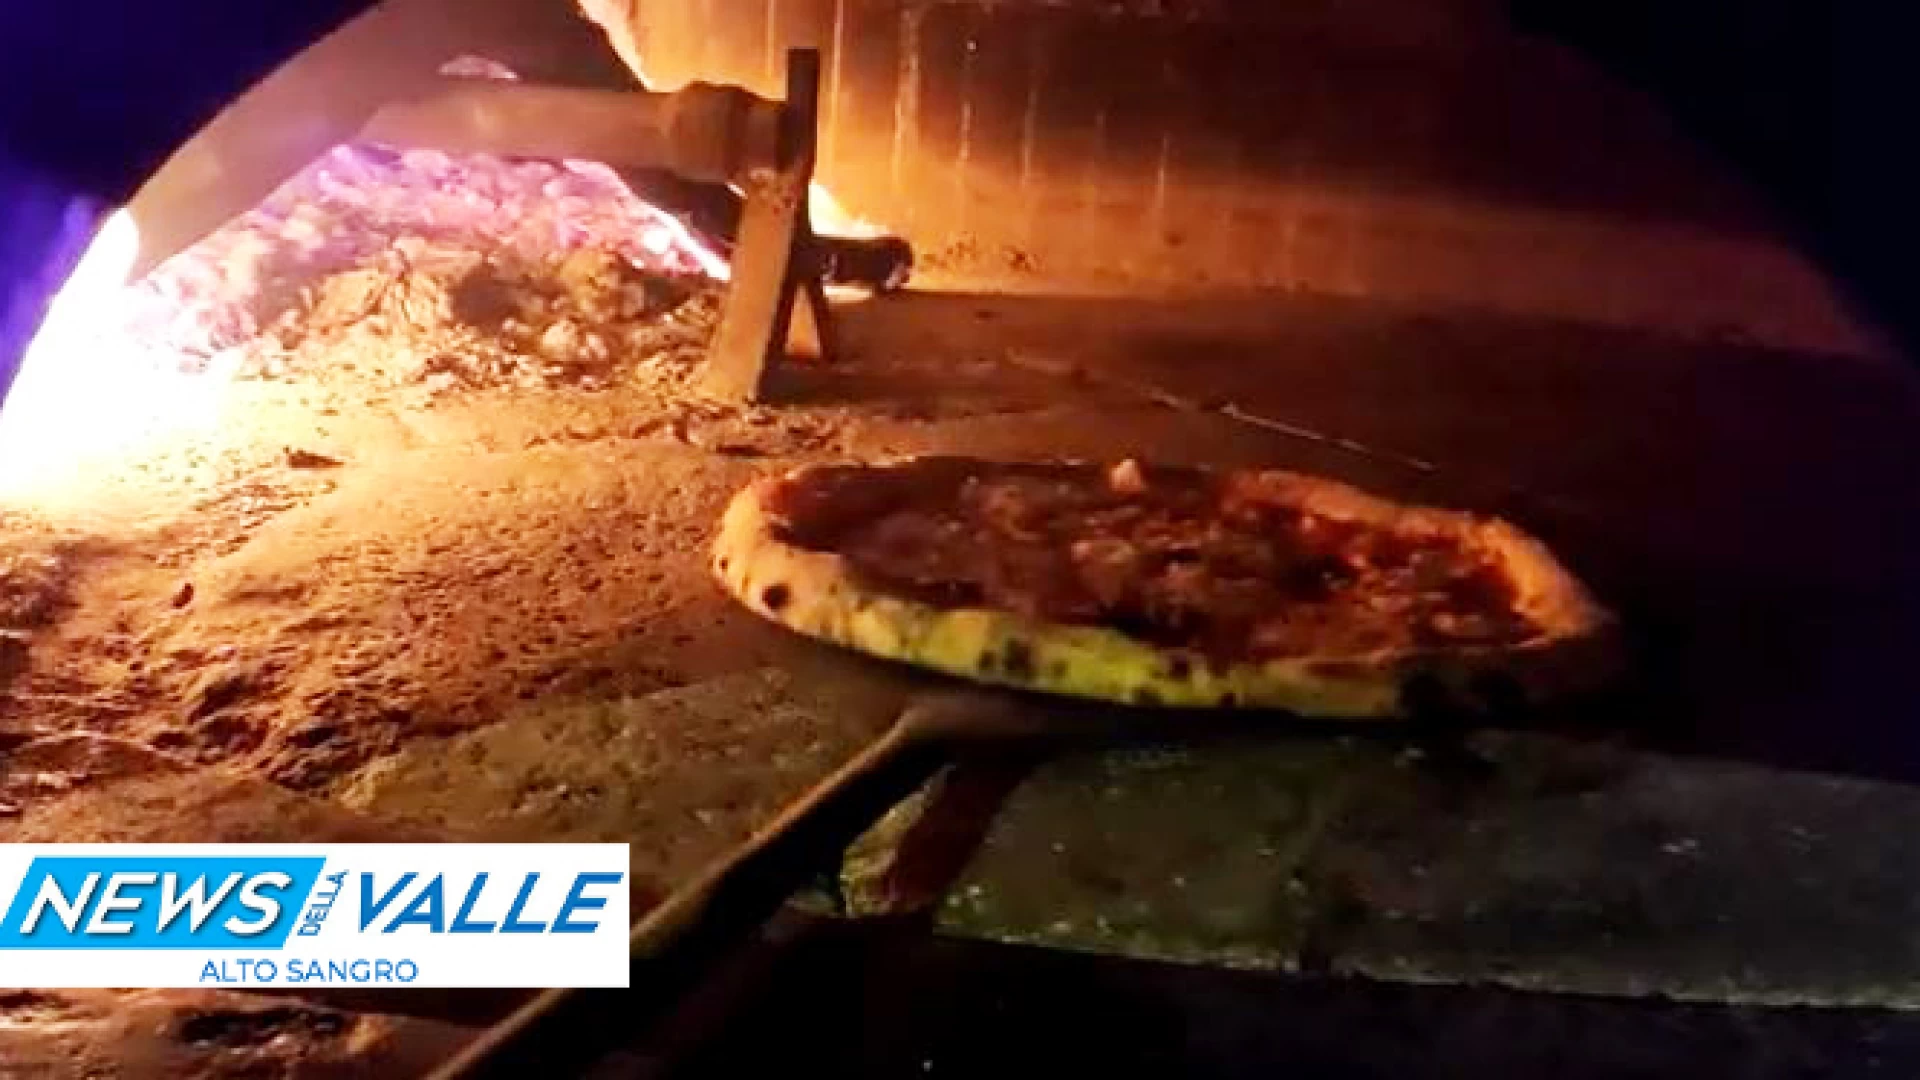 La vera pizza napoletana alla Pizzeria "La Casetta" di Colli a Volturno. Guarda lo Spot